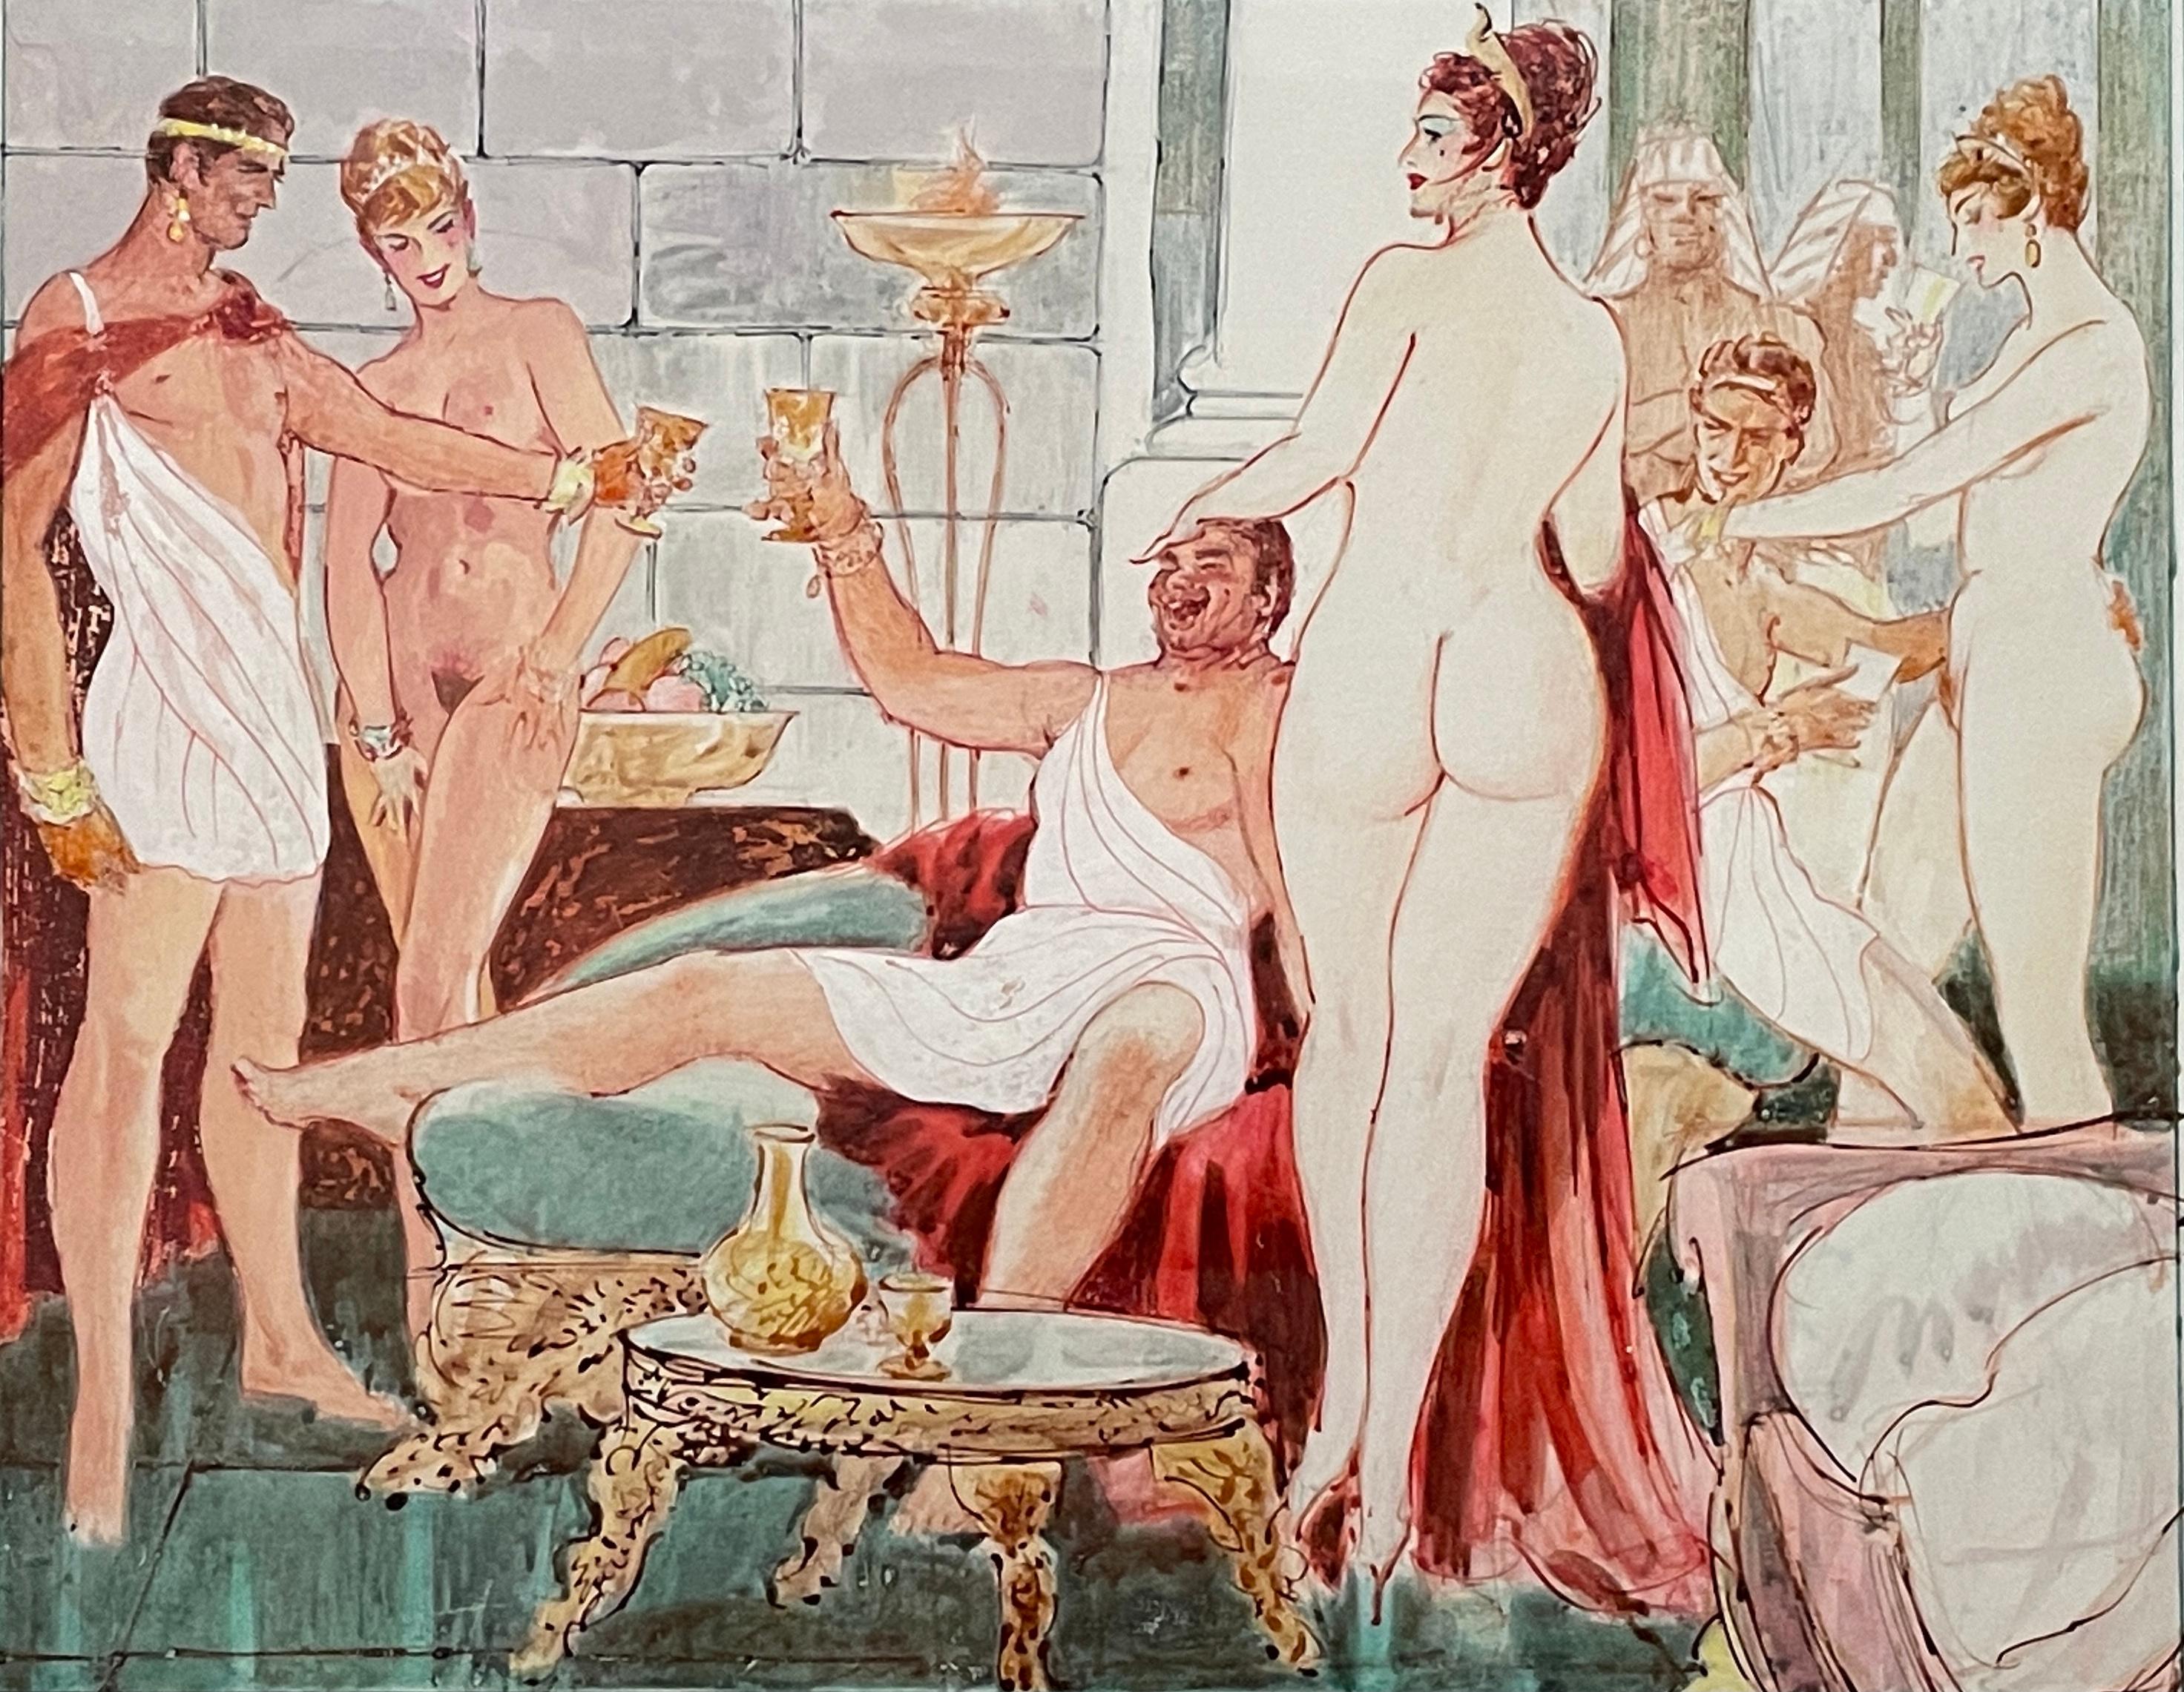 W. Aquarelle érotique signée par Hall représentant des hommes vêtus de toges buvant avec des femmes nues avec des gardes égyptiens en arrière-plan. Mesures : 30